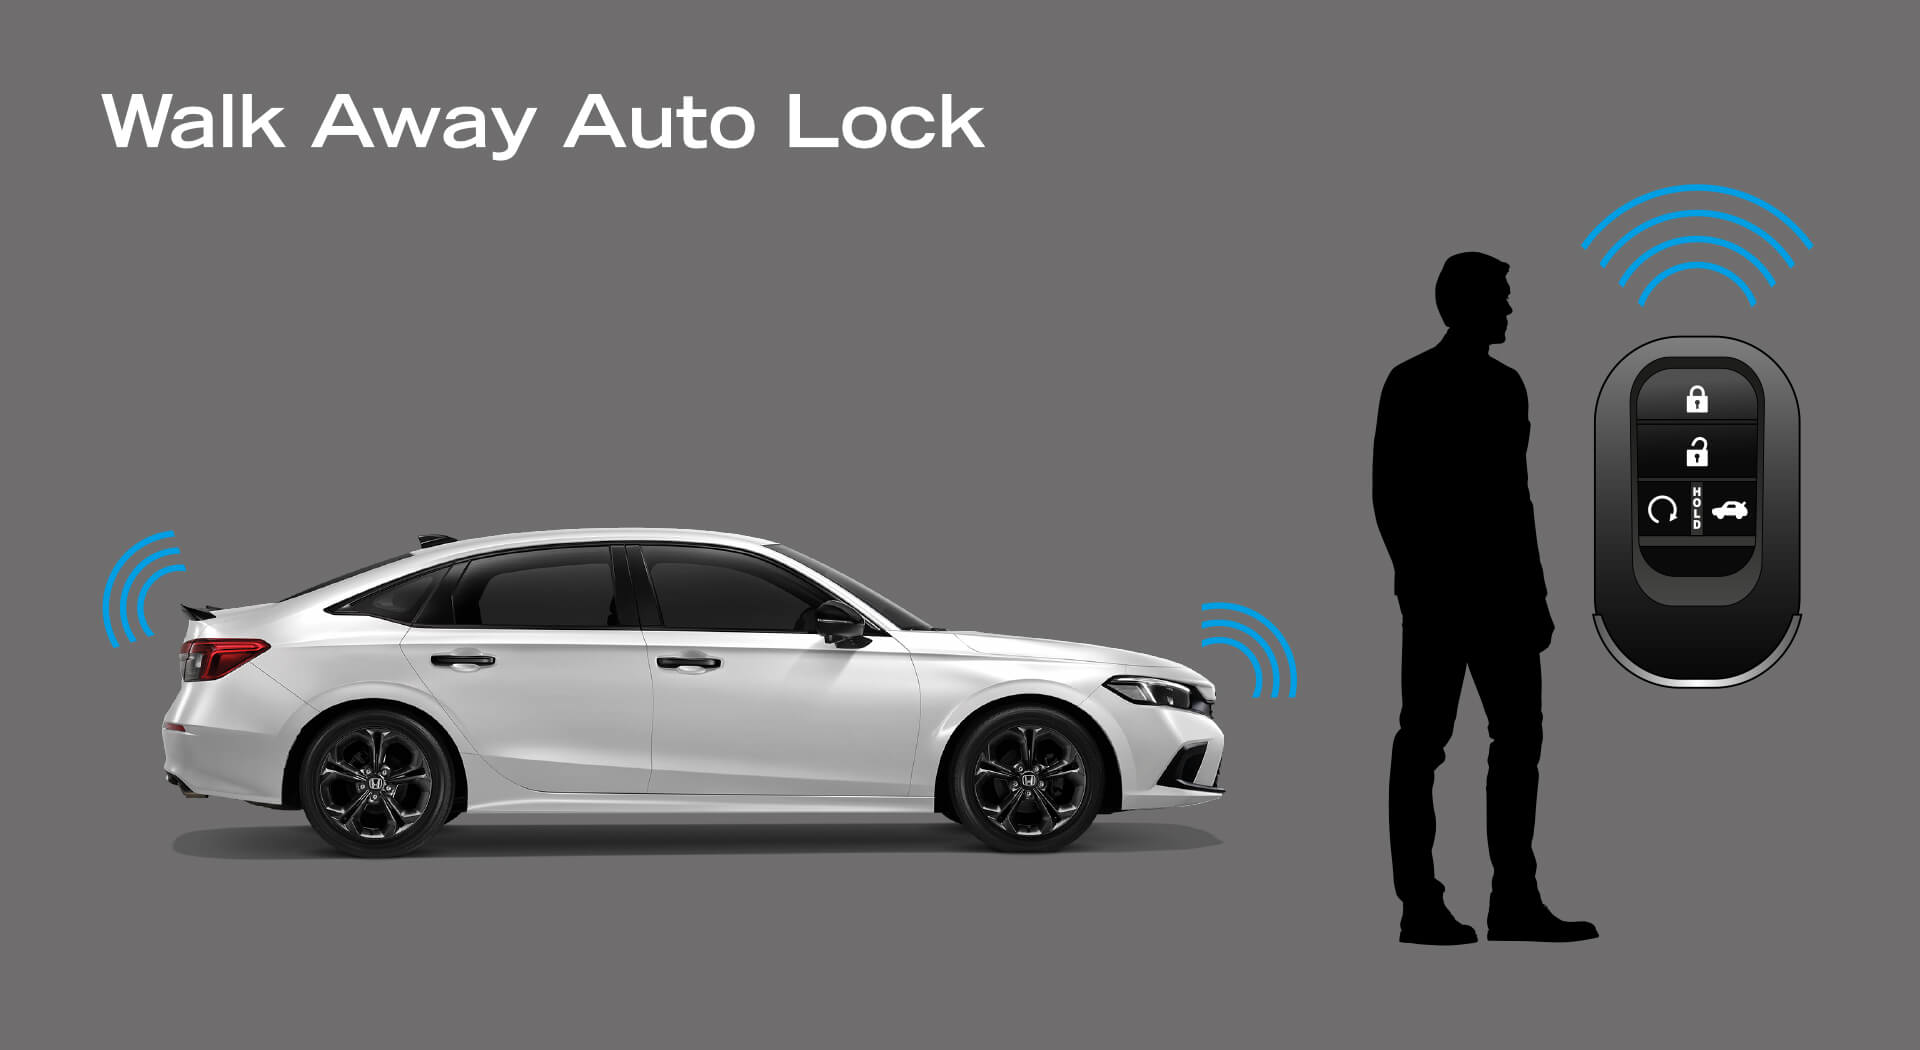 Walk Away Auto Lock ระบบล็อกรถอัตโนมัติ เมื่อกุญแจรีโมทอยู่ห่างจากตัวรถ